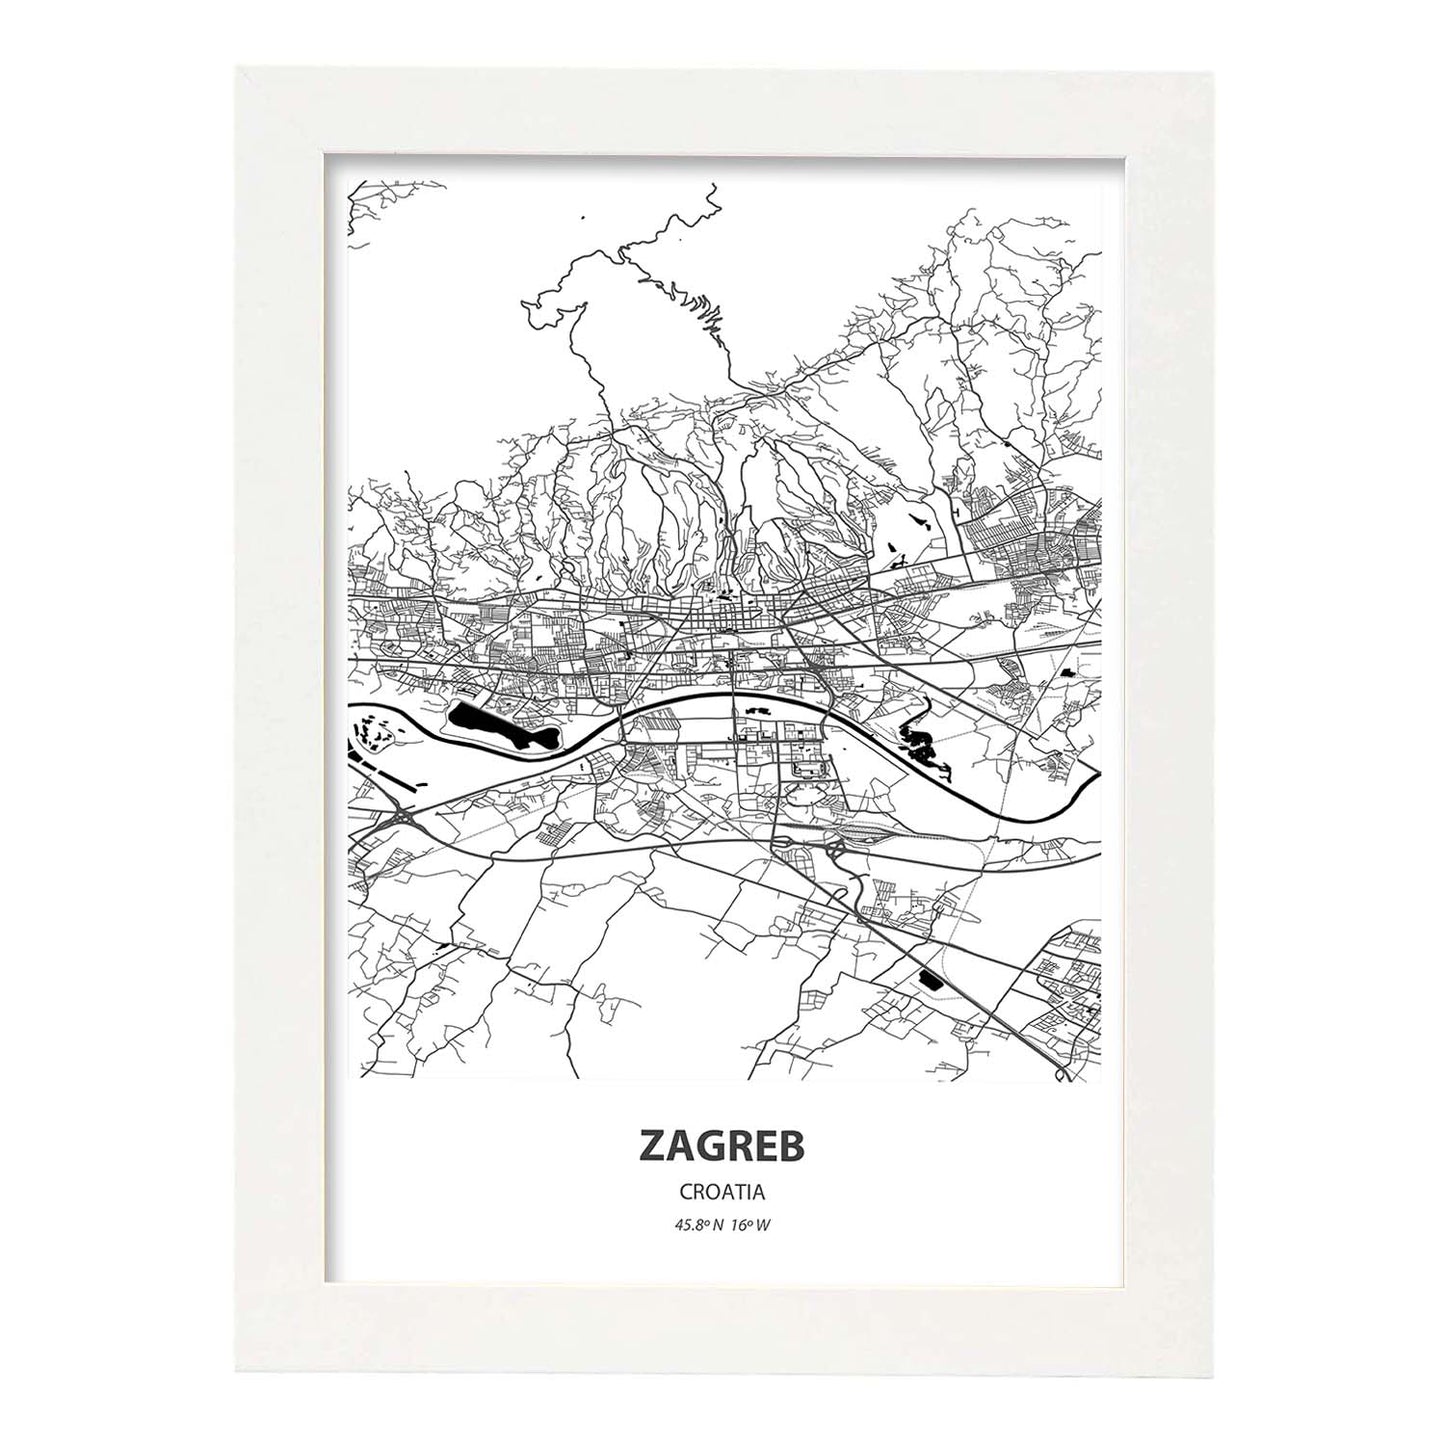 Poster con mapa de Zagreb - Croacia. Láminas de ciudades de Europa con mares y ríos en color negro.-Artwork-Nacnic-A3-Marco Blanco-Nacnic Estudio SL